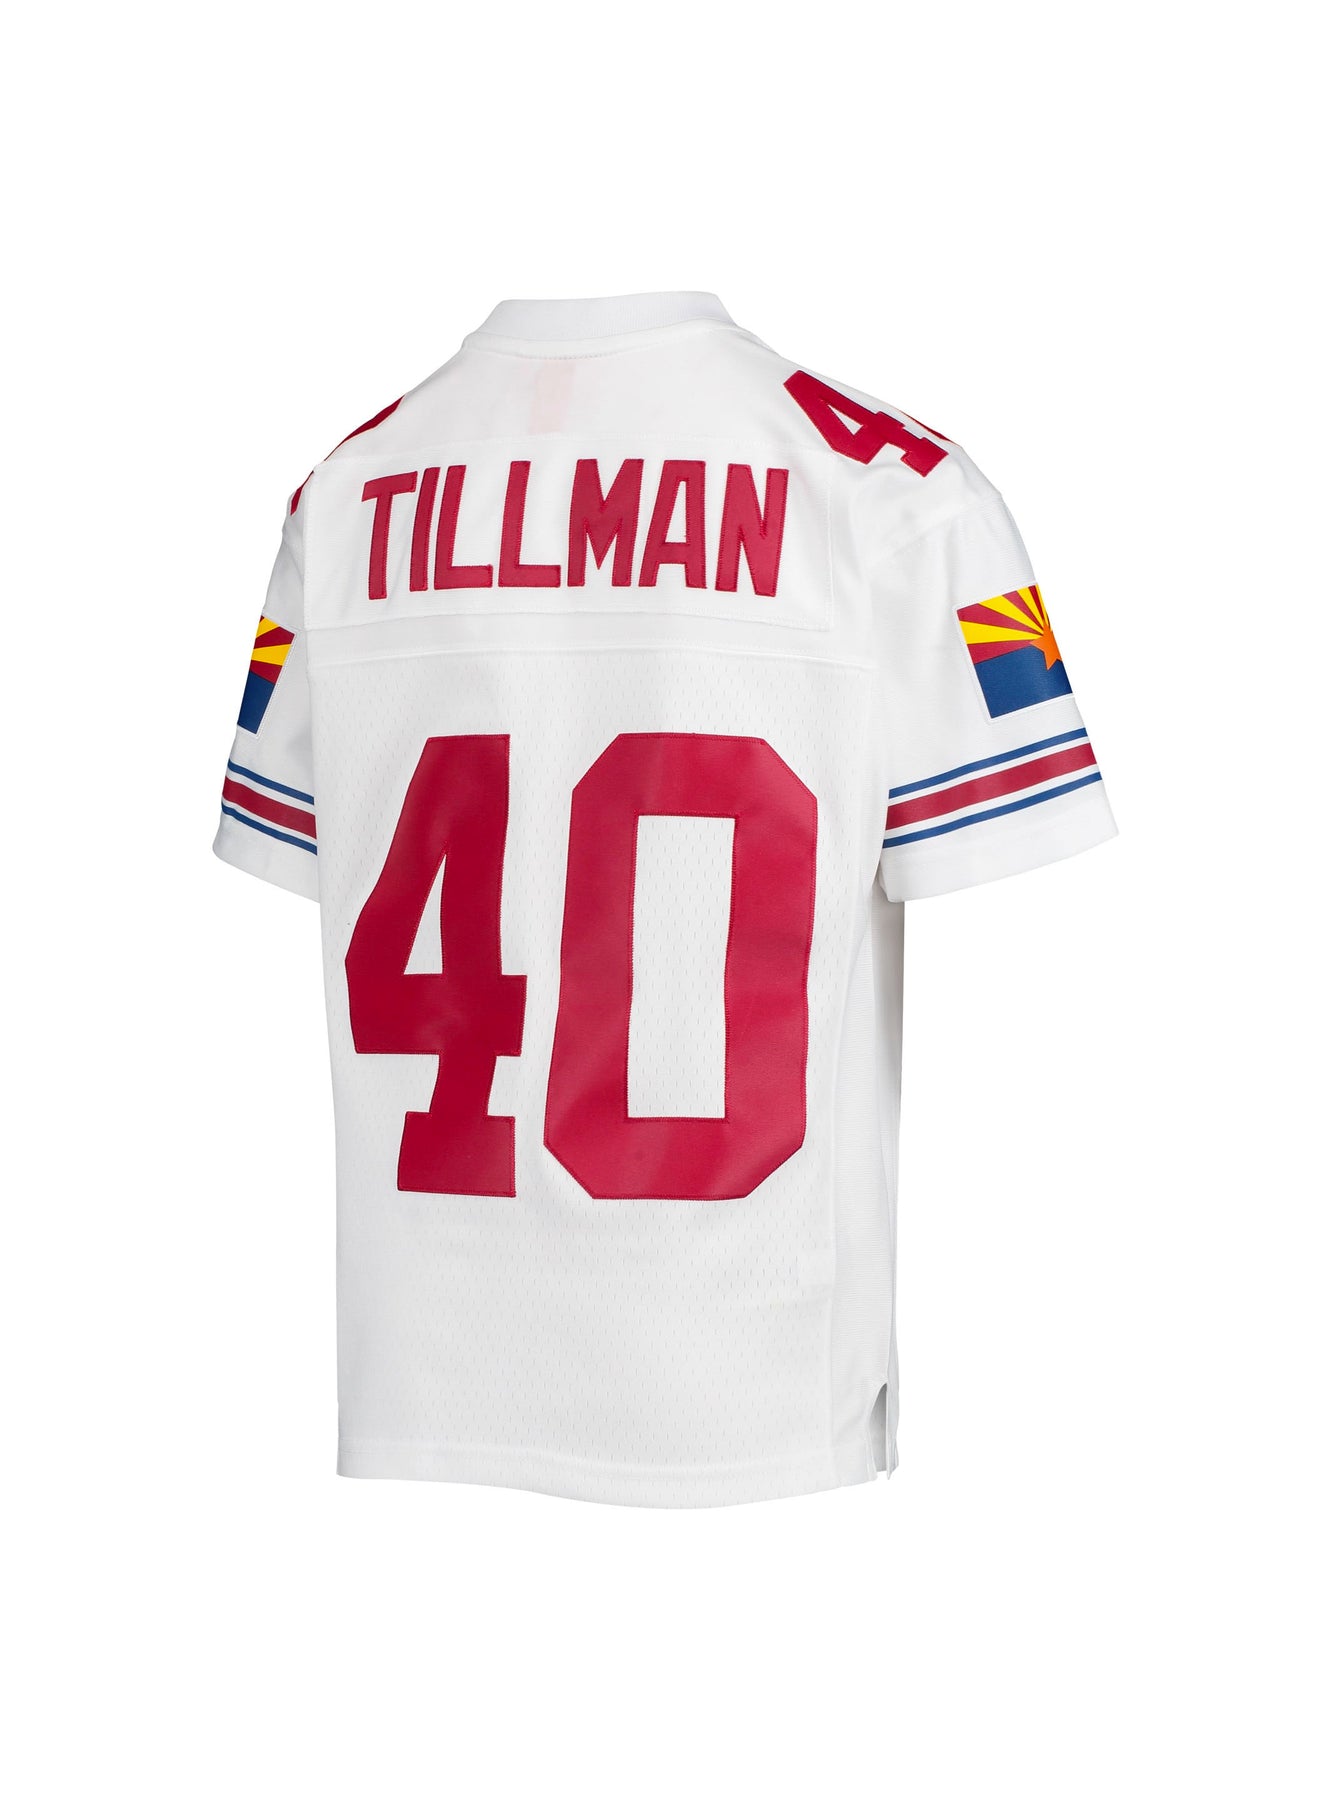 Pat Tillman has Arizona's top-selling throwback jersey